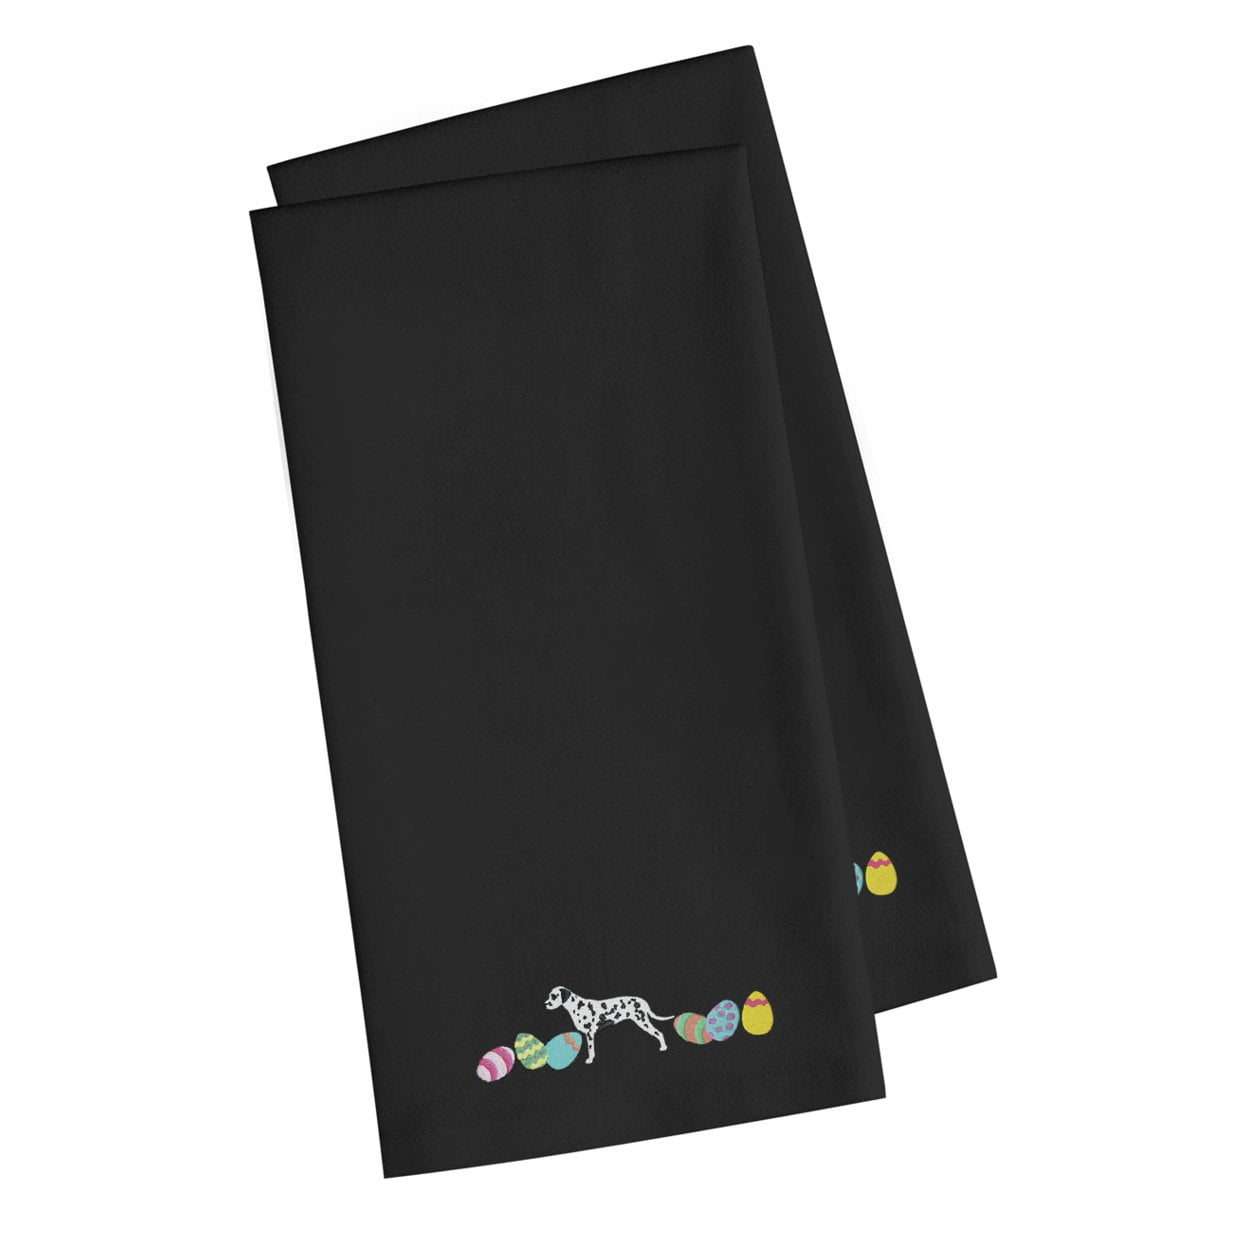 Ck1632bktwe Dalmatian Easter Black Embroidered Kitchen Towel - Set Of 2